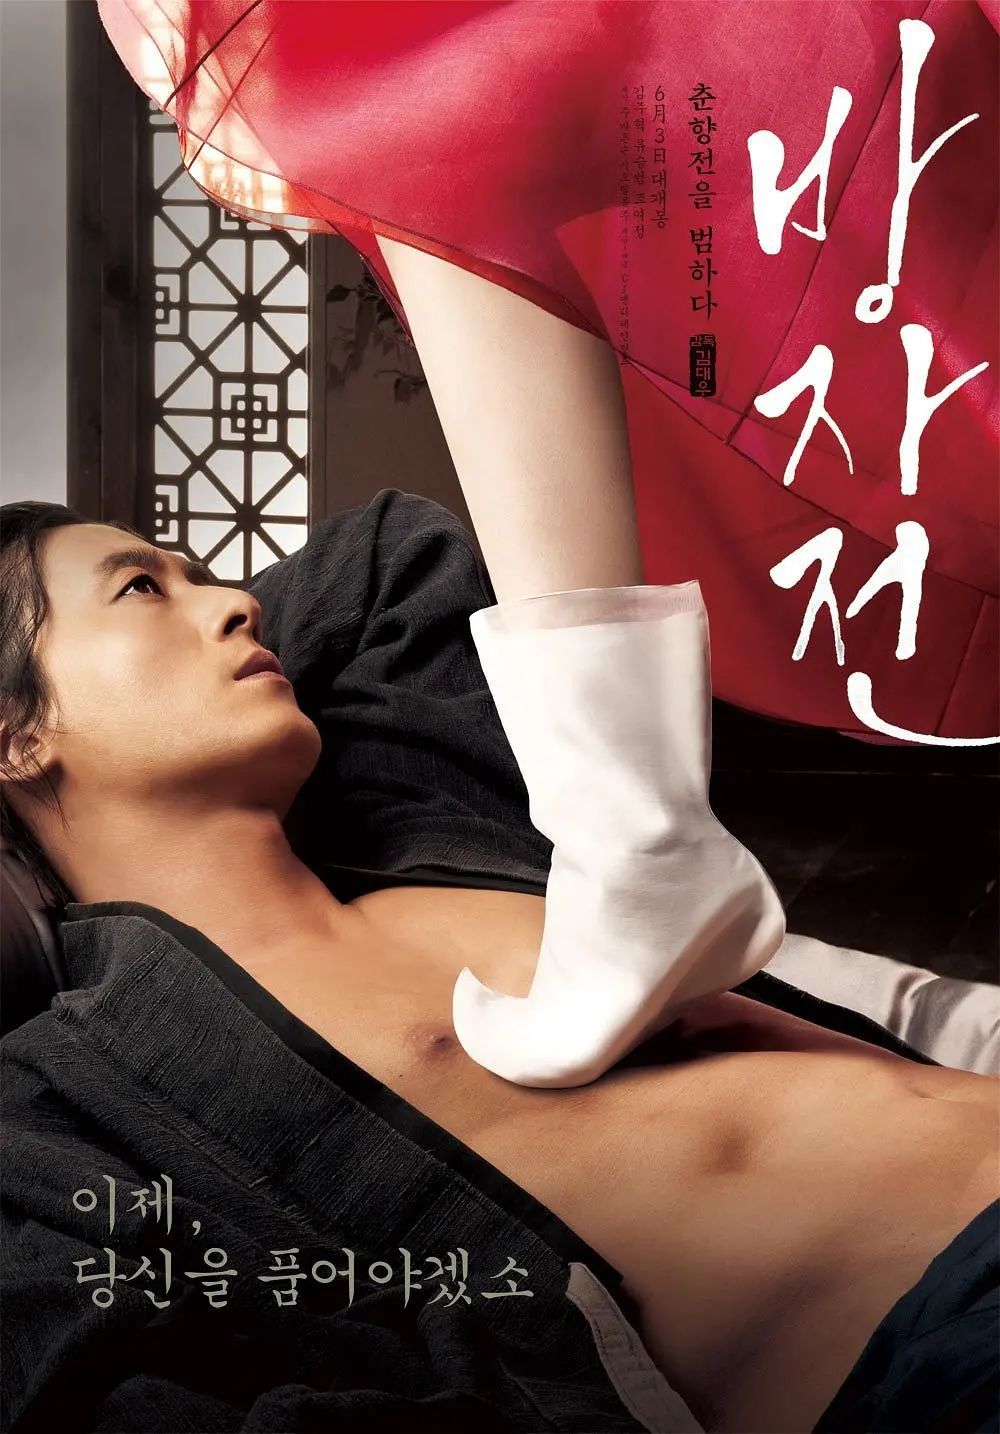 《方子传》:韩国演员赵茹珍逆天了,为这部电影不惜与男友分手第1张